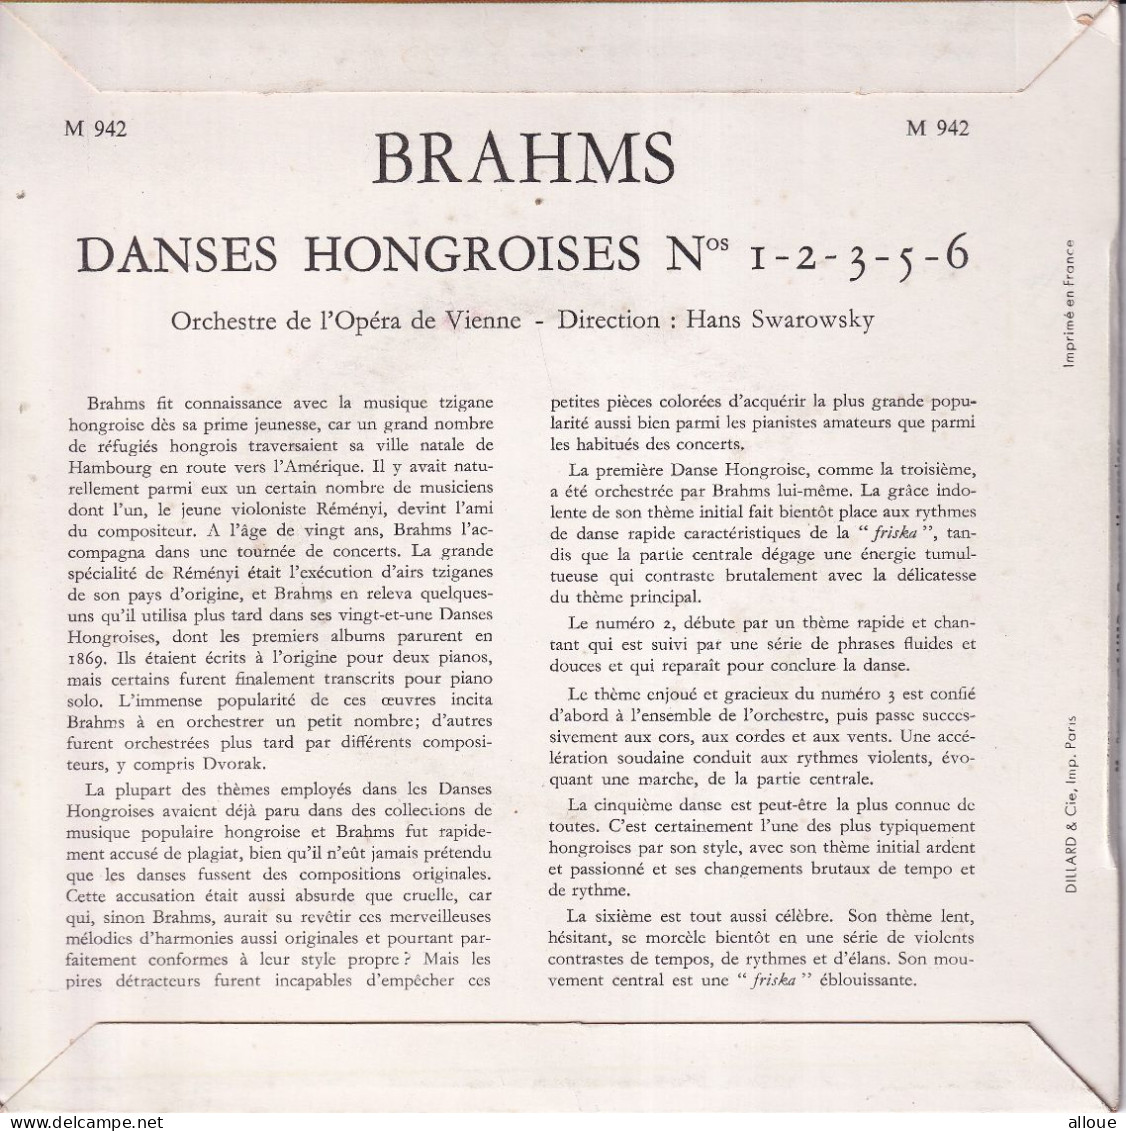 ORCHESTRE DE L'OPERA DE VIENNE - DIRECTION HANS SWAROWSKY - FR EP - BRAHMS - DANCES HONGROISES - Clásica